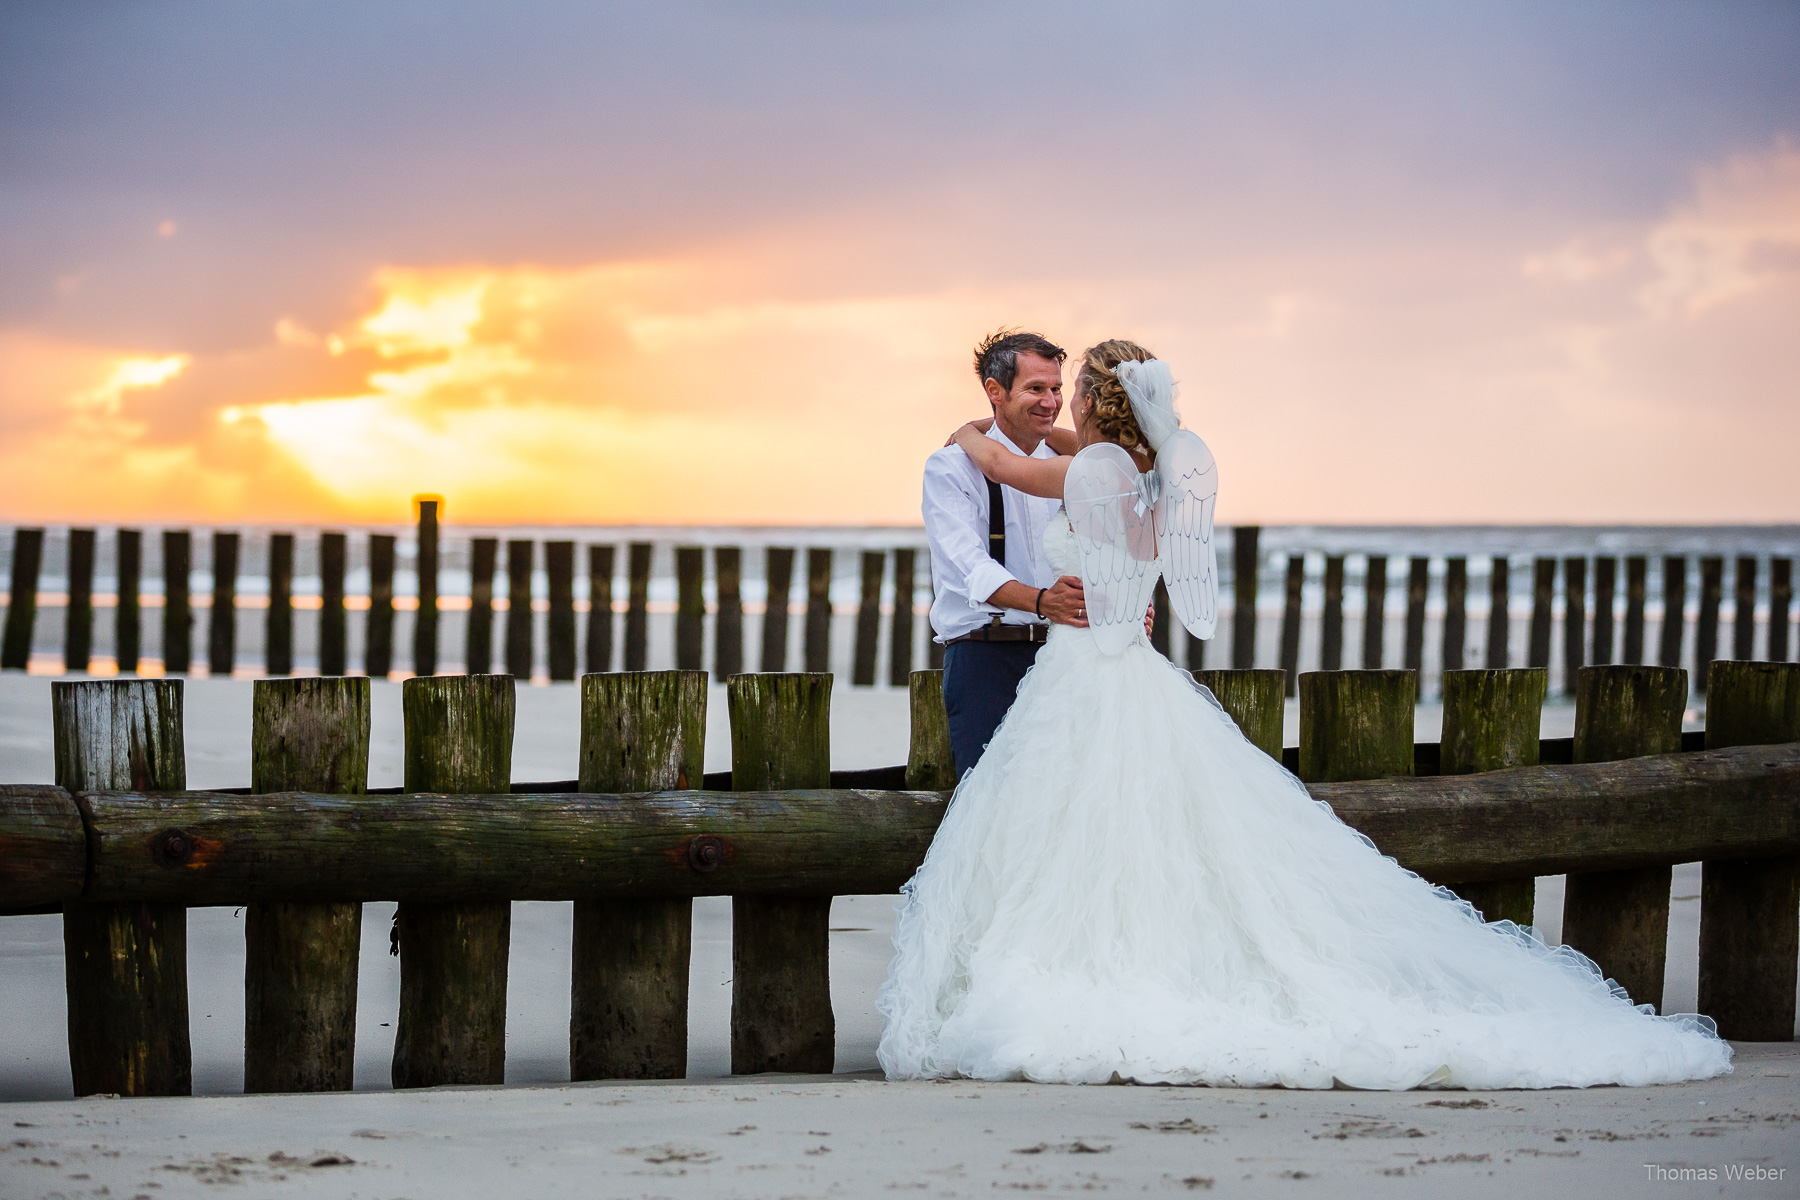 Hochzeitsfotograf auf Wangerooge, moderne Hochzeitsfotos mit Hochzeitskleid am Strand bei Sonnenuntergang, Hochzeitsfotograf Thomas Weber aus Oldenburg